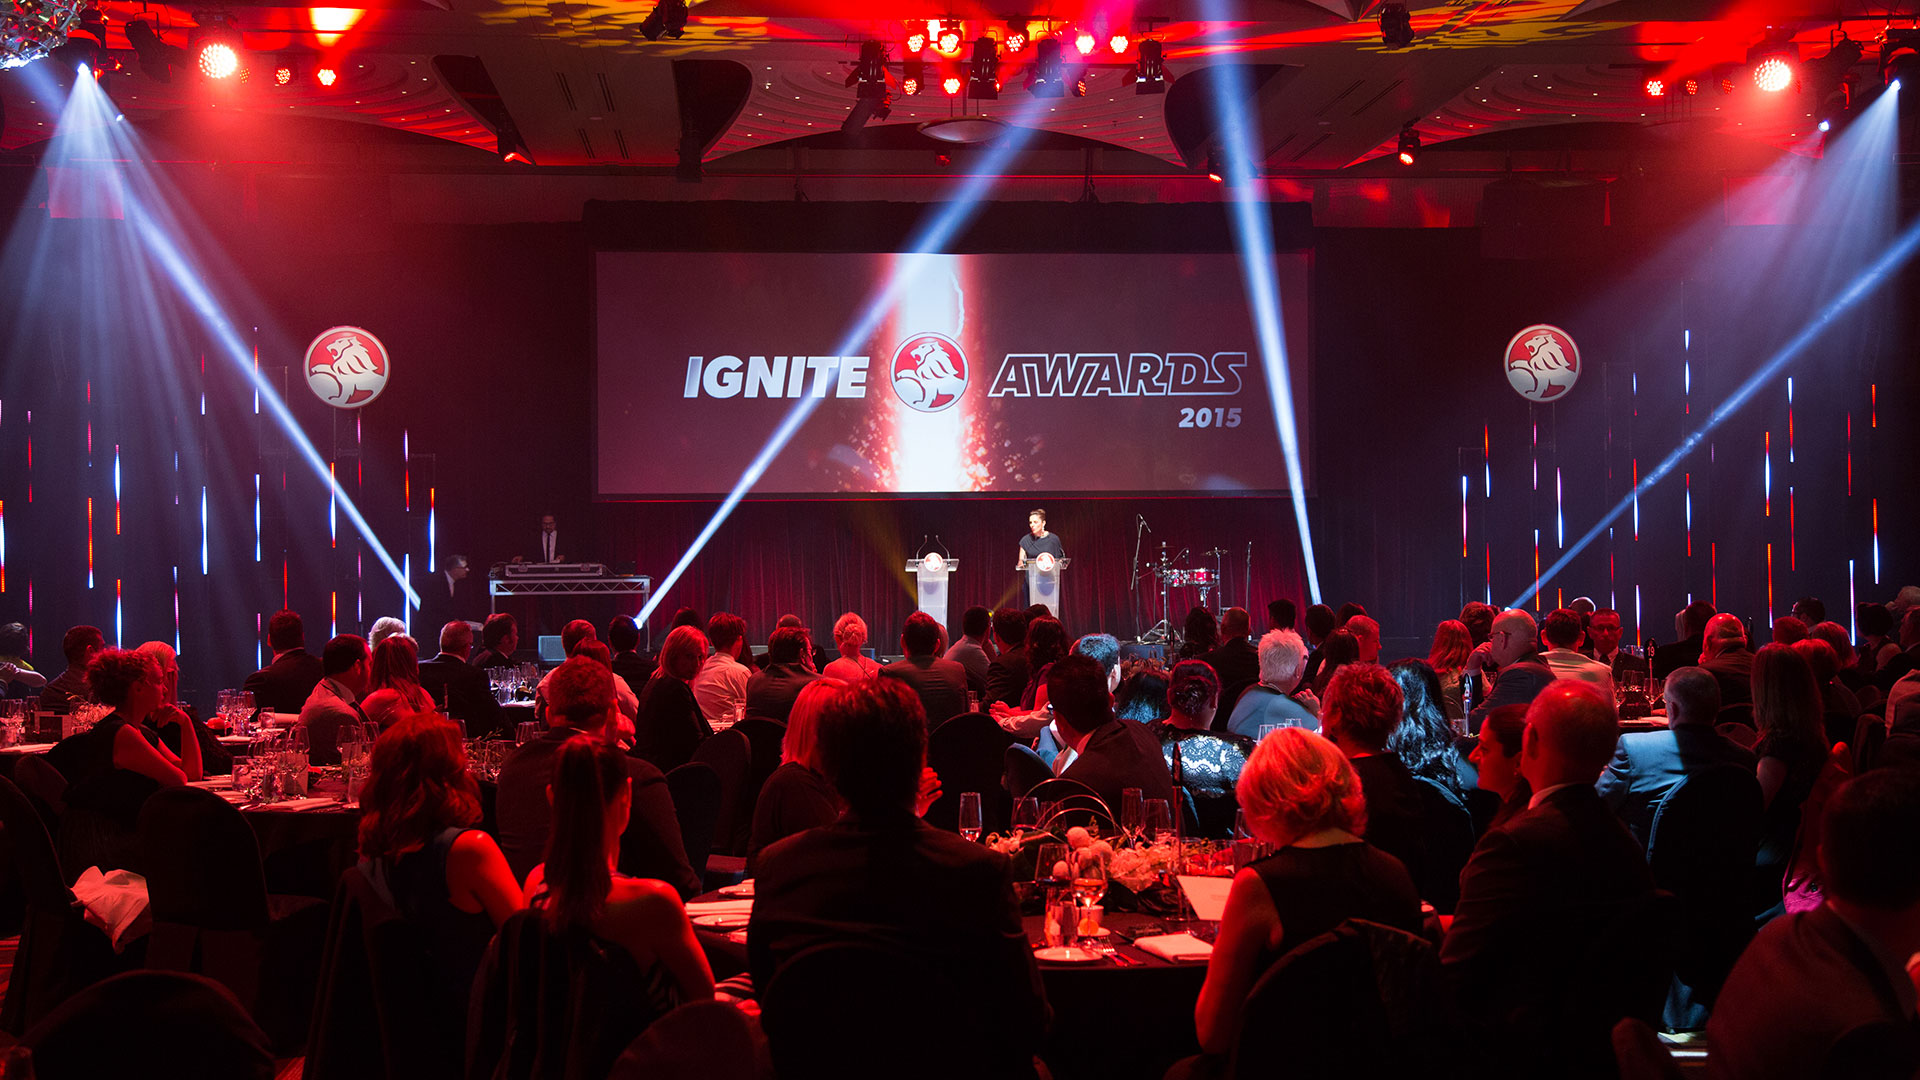 Holden Ignite Awards